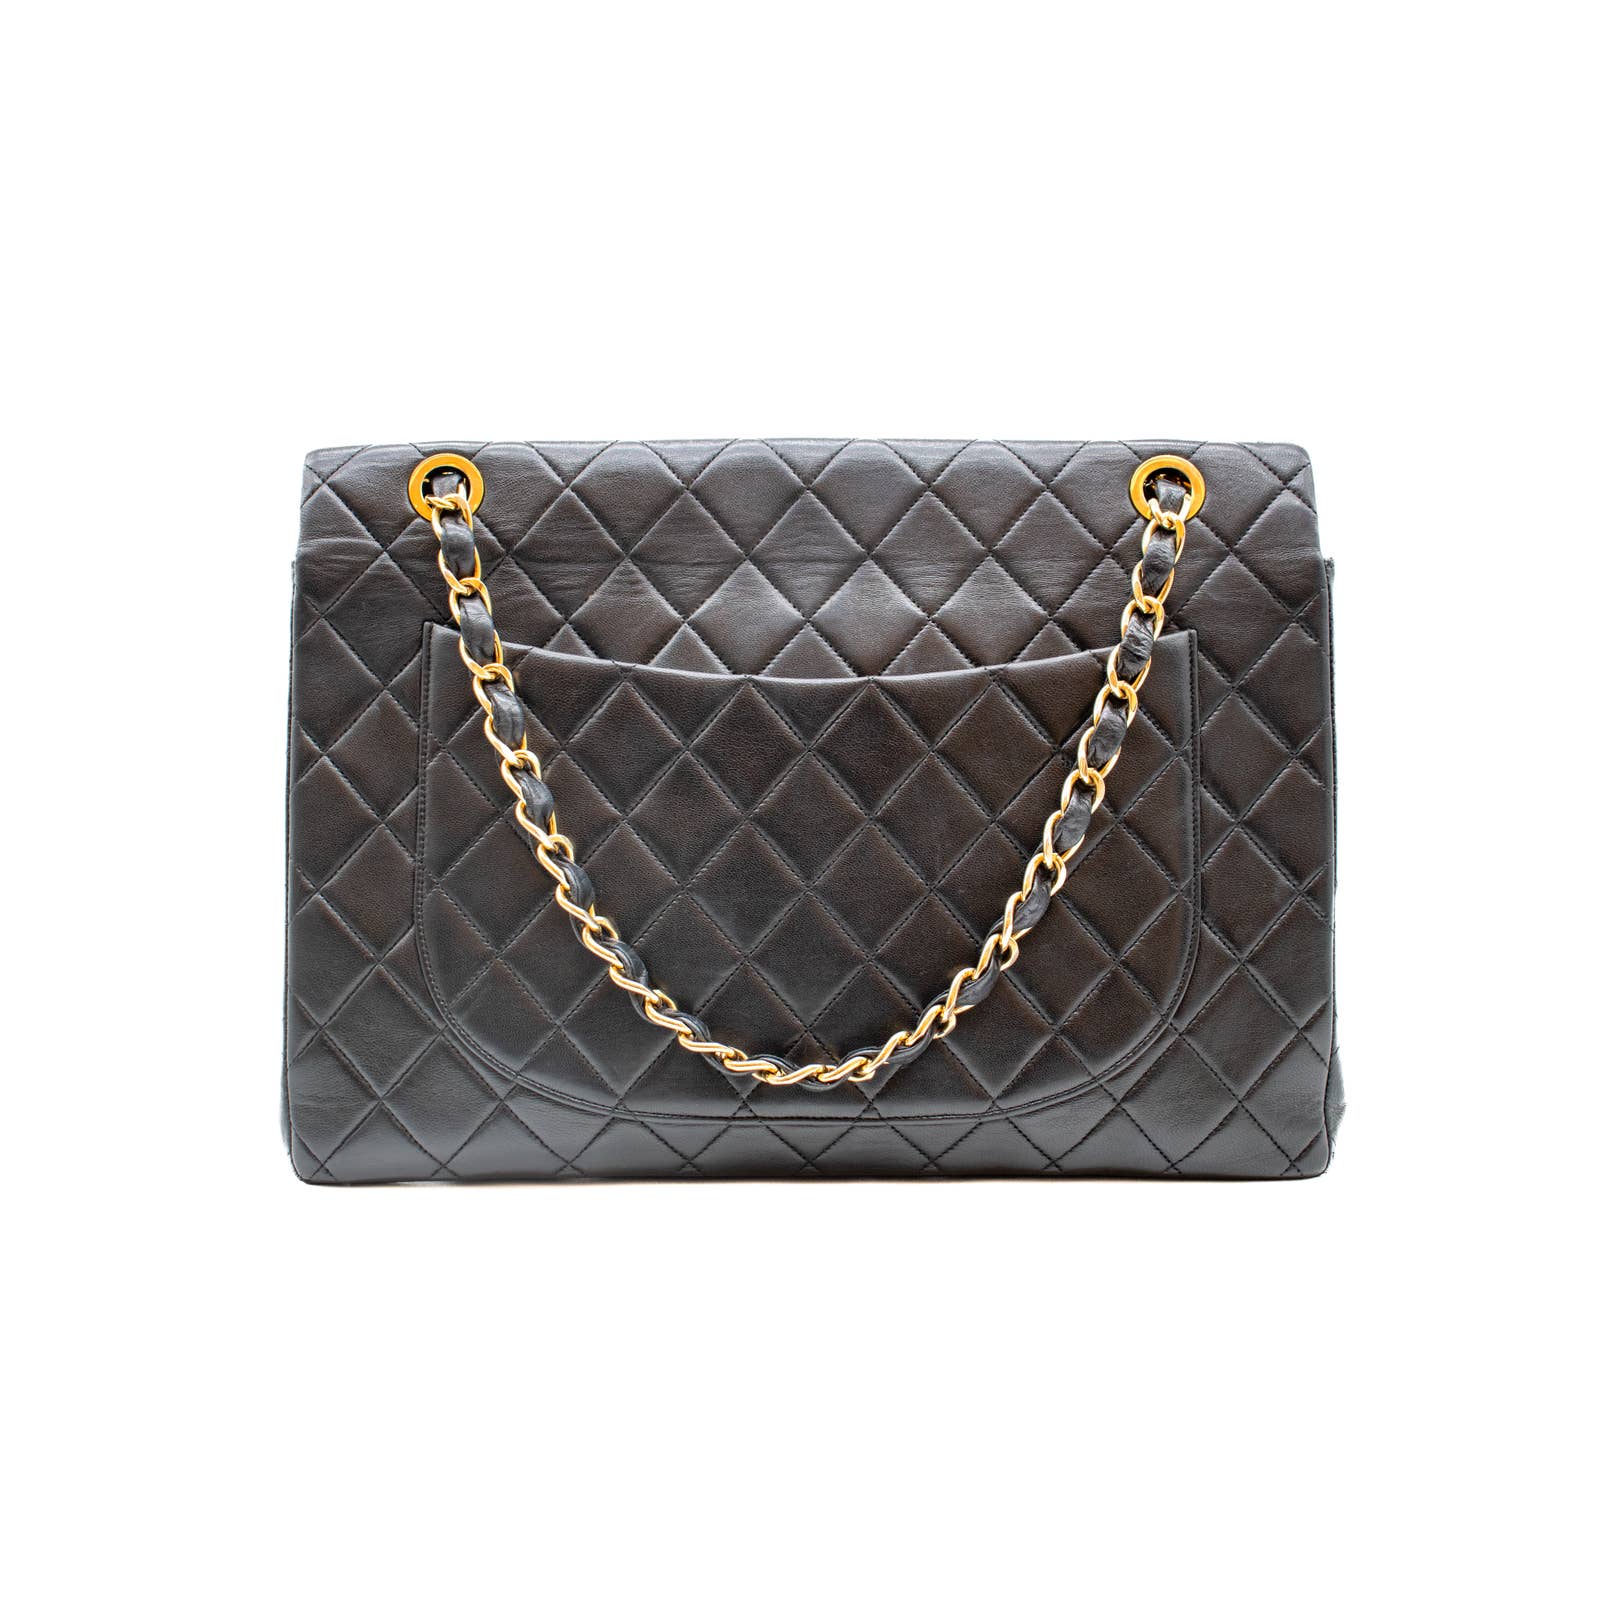 Chanel Classic Flap Bag Maxi